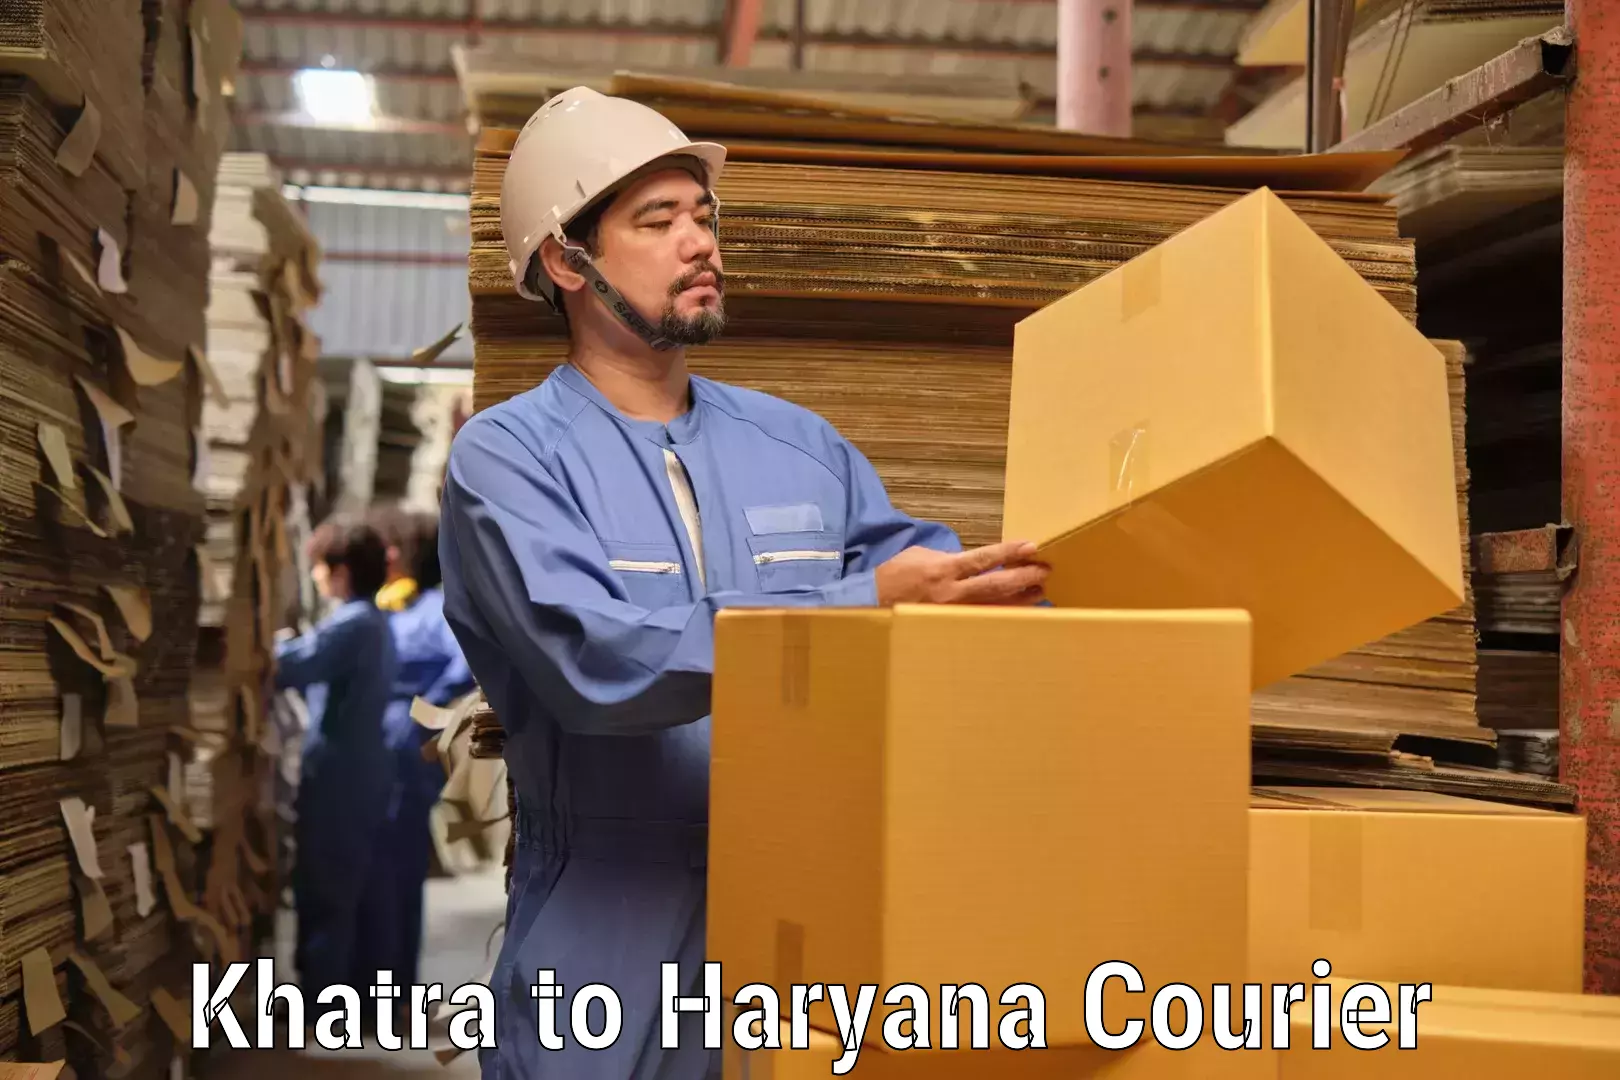 Express logistics providers Khatra to Haryana